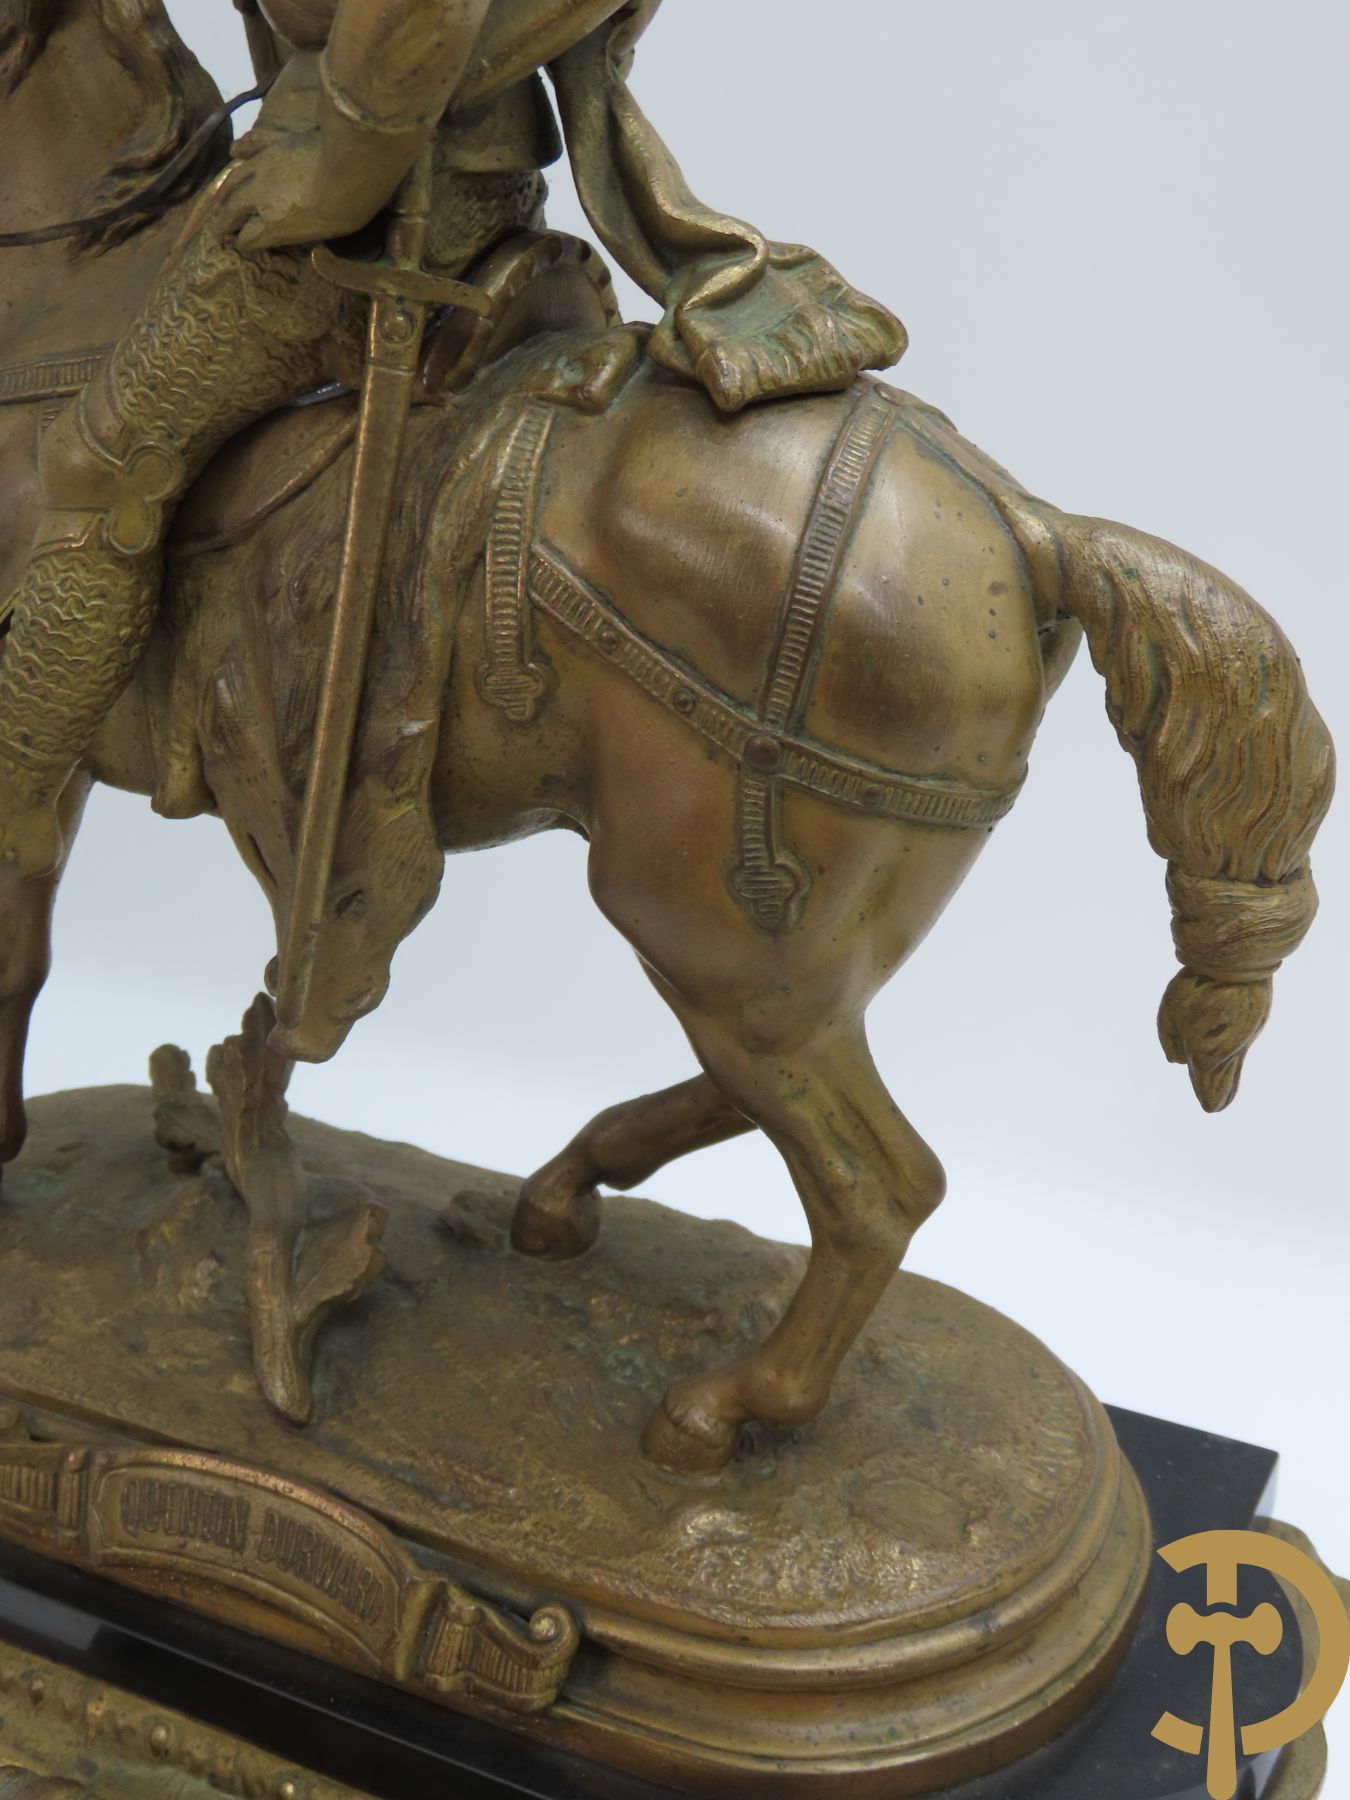 Kunstbronzen pendule Quentin - Durwart gemerkt, horloge bekroond met ridder op het paard, F. Laurent getekend